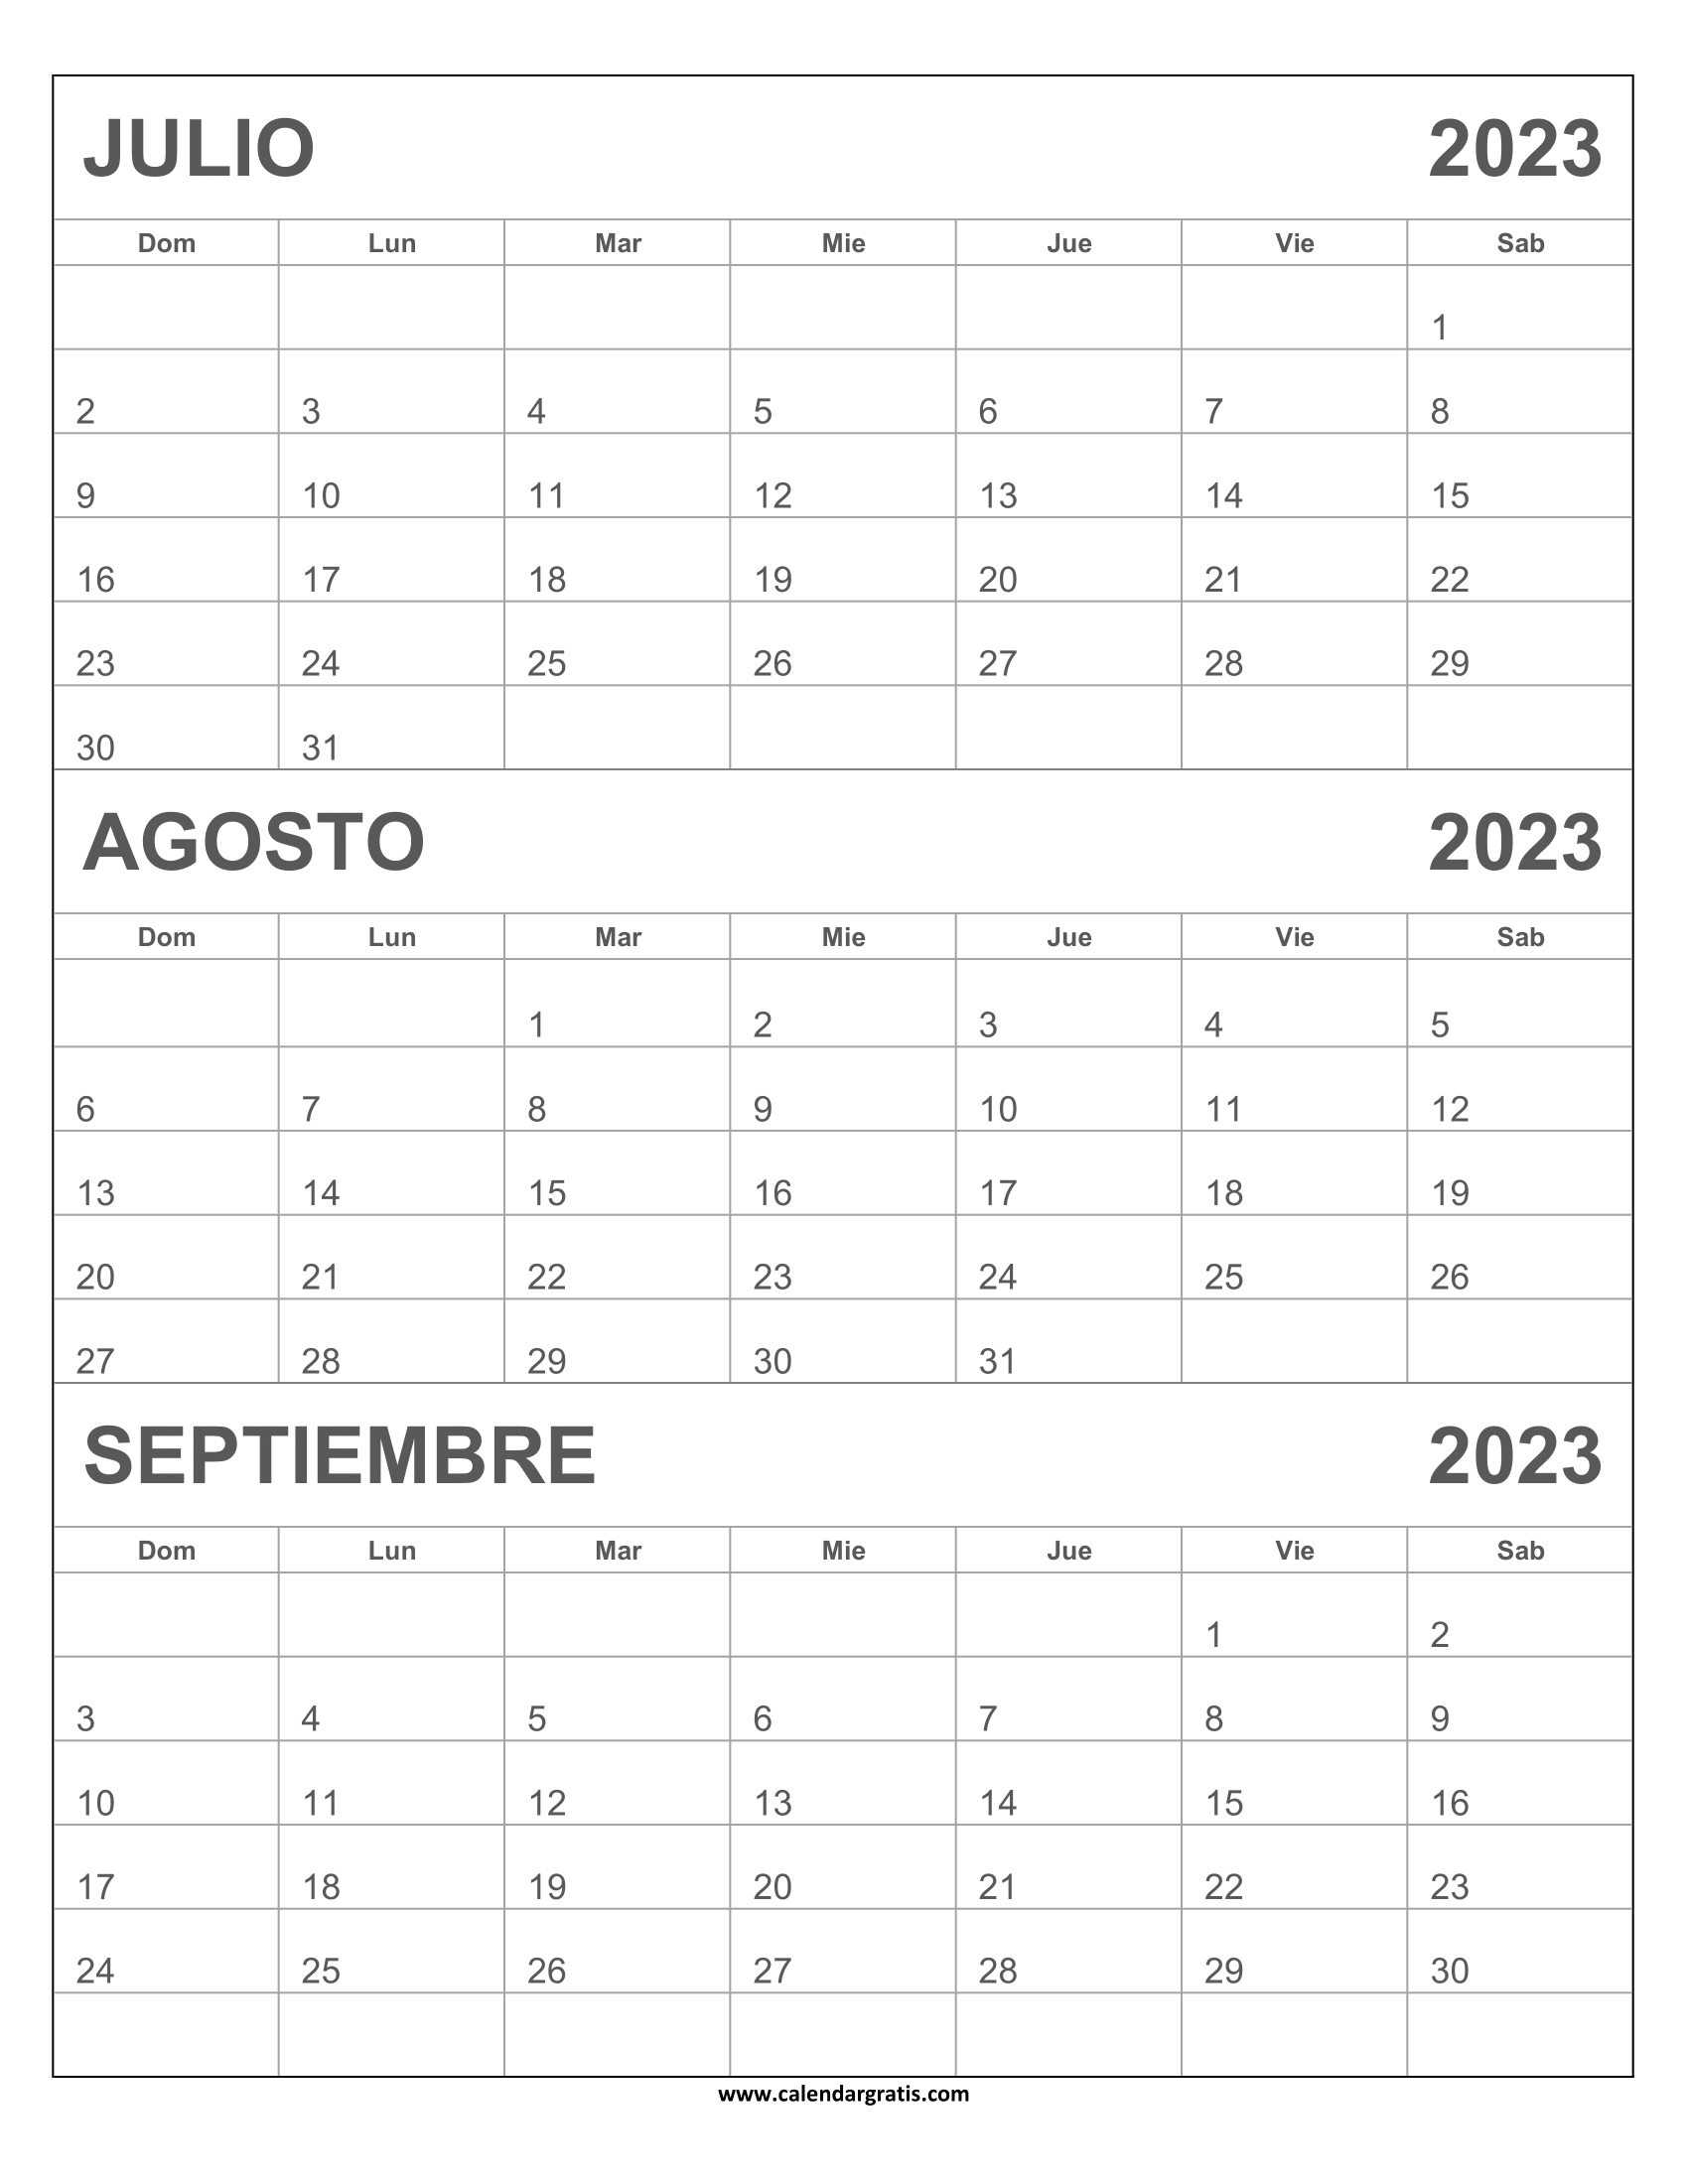 Calendario Julio Agosto Septiembre 2023 gratis